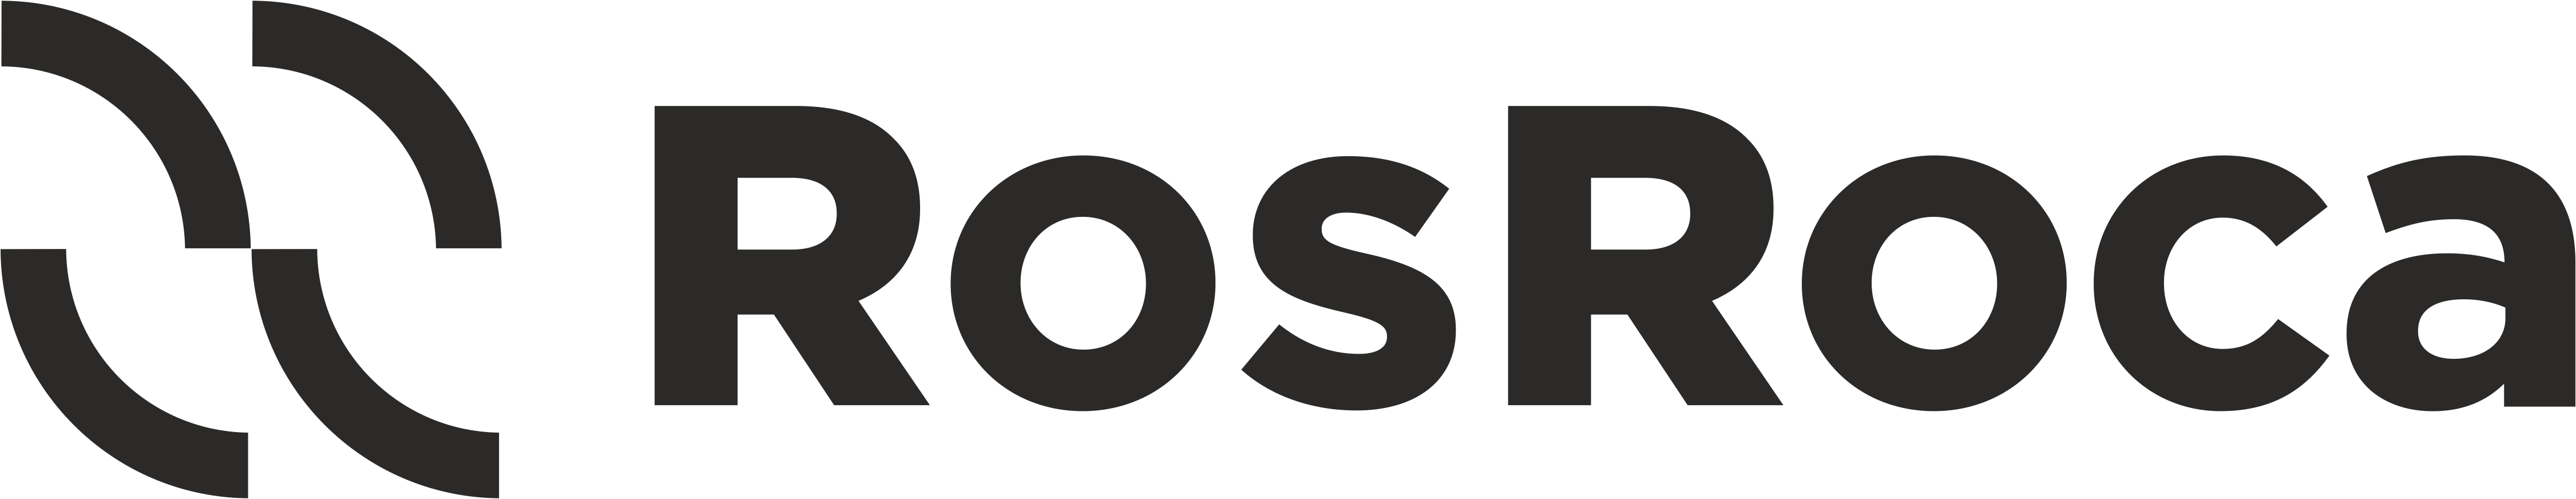 RosRoca - TRRG - Agreed logo - Sept 2016 Black.png